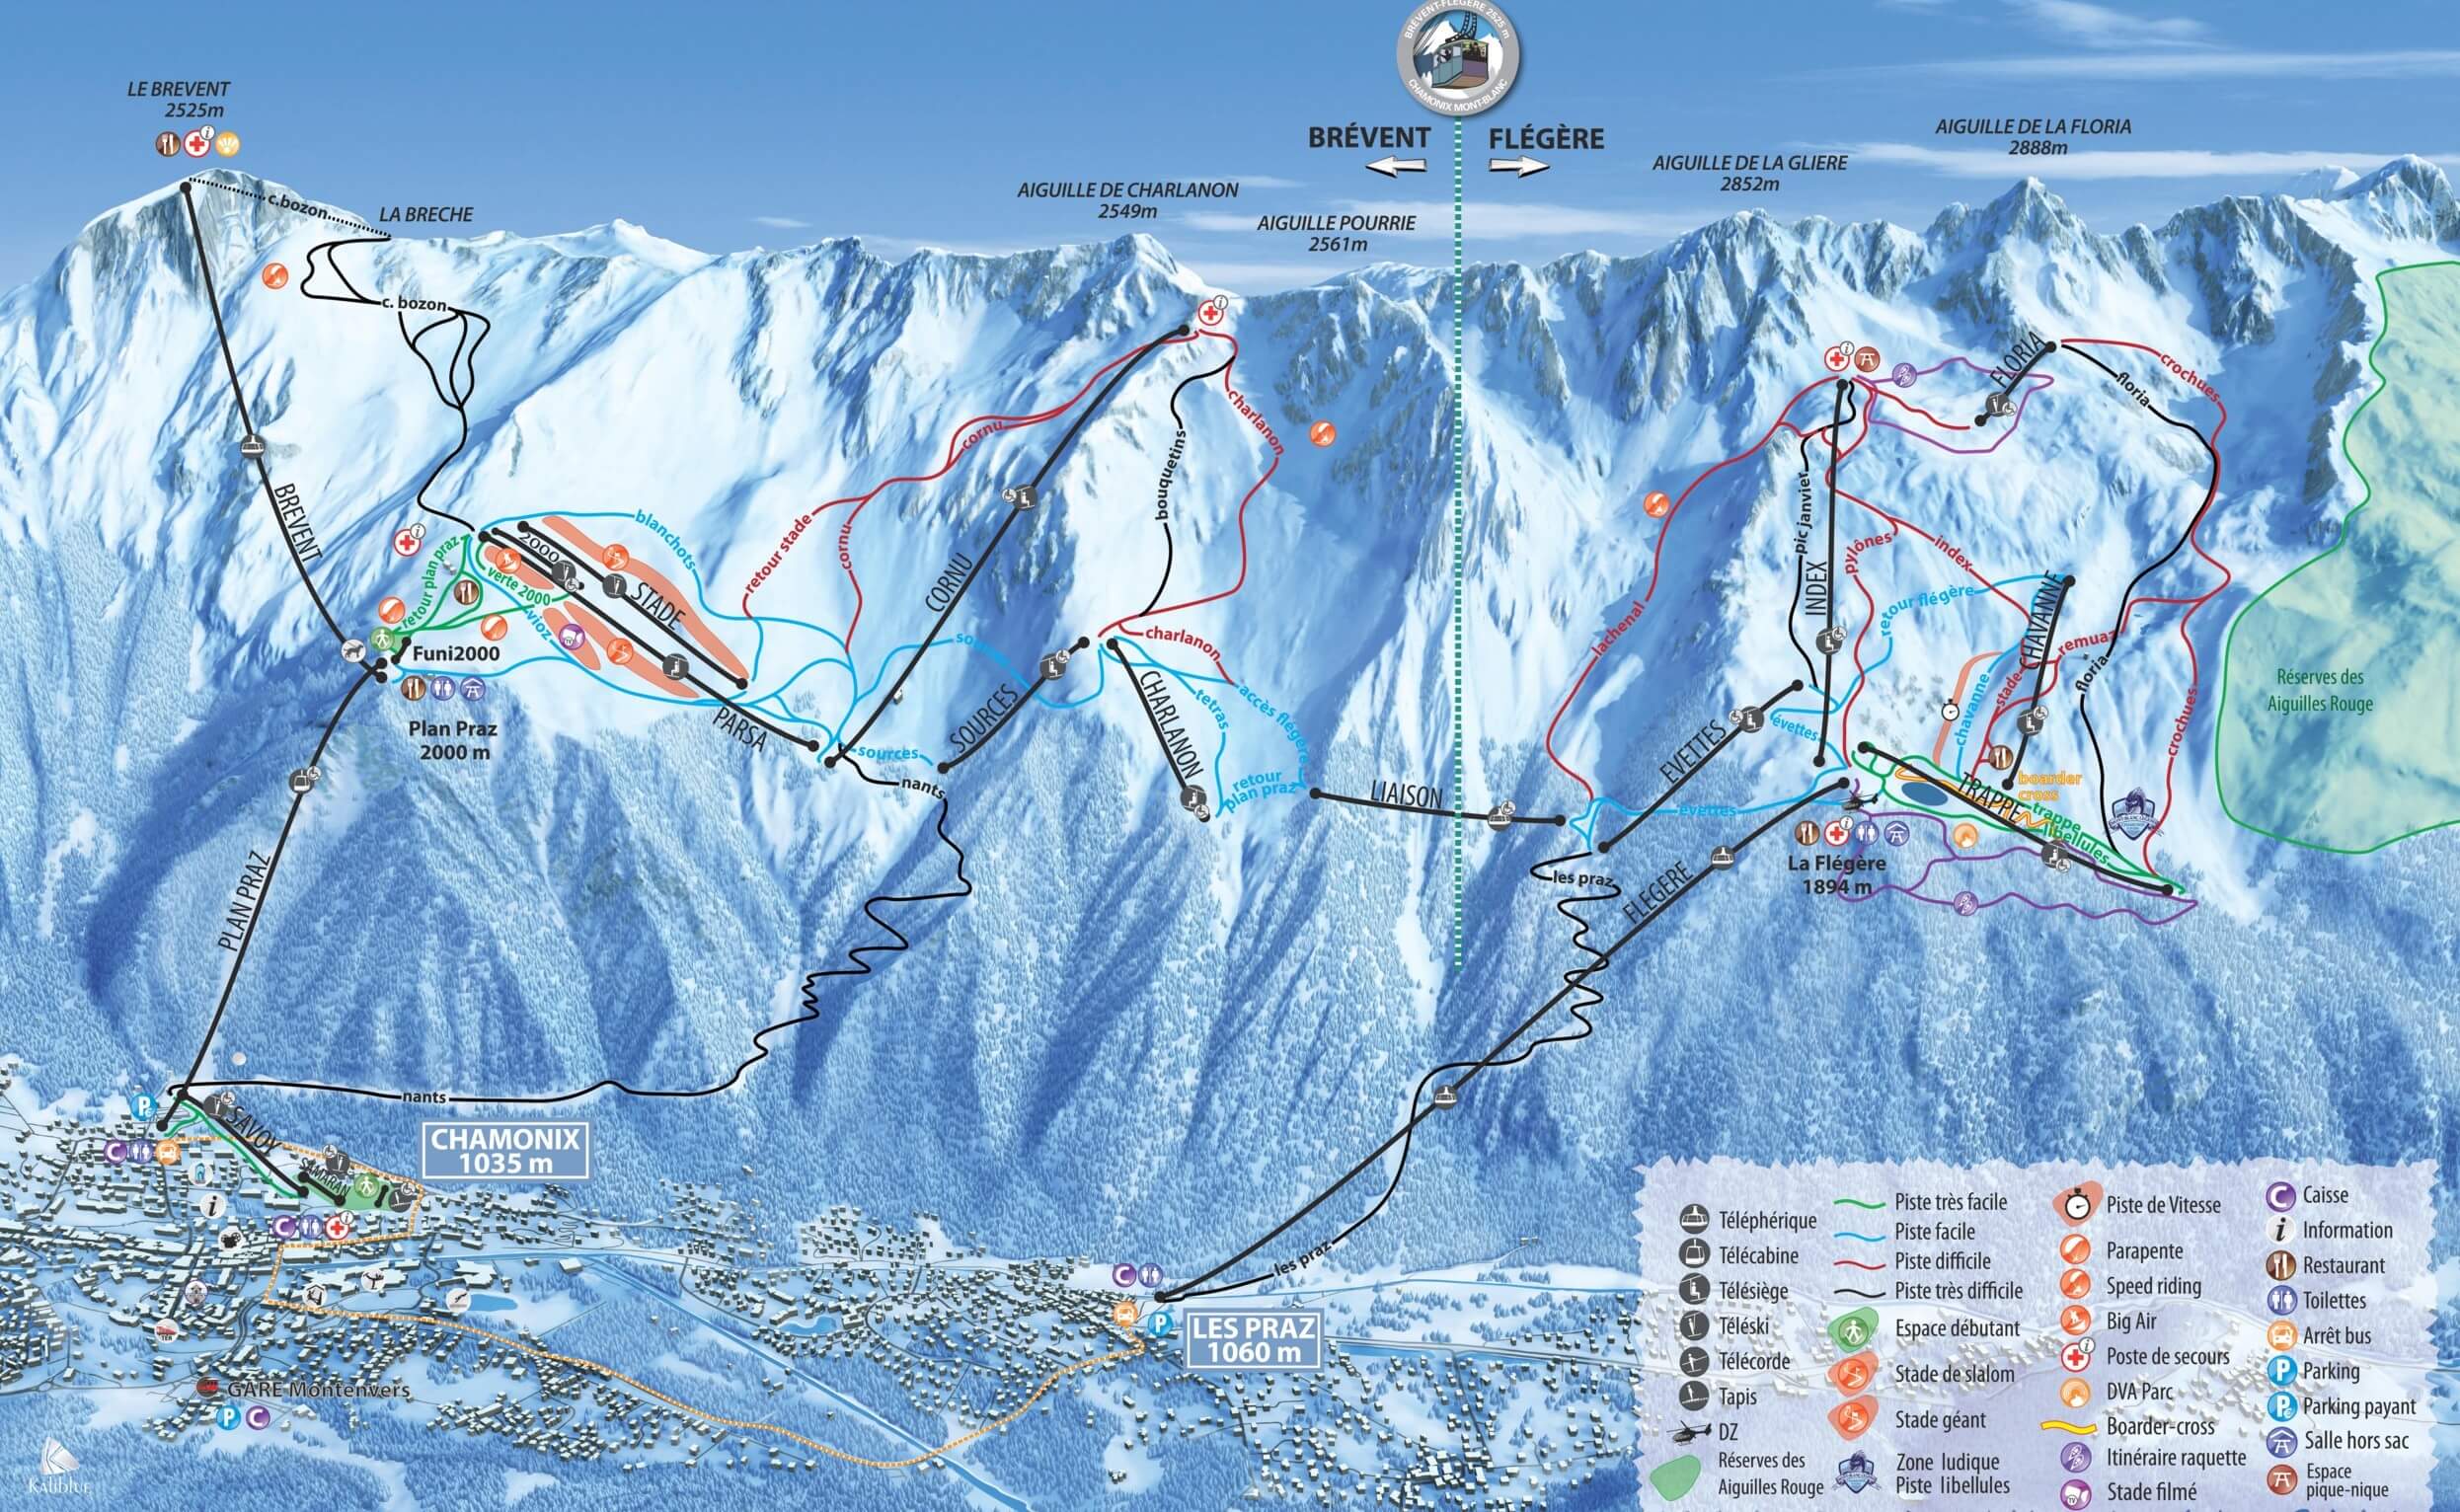 Chamonix Mont-Blanc slopes